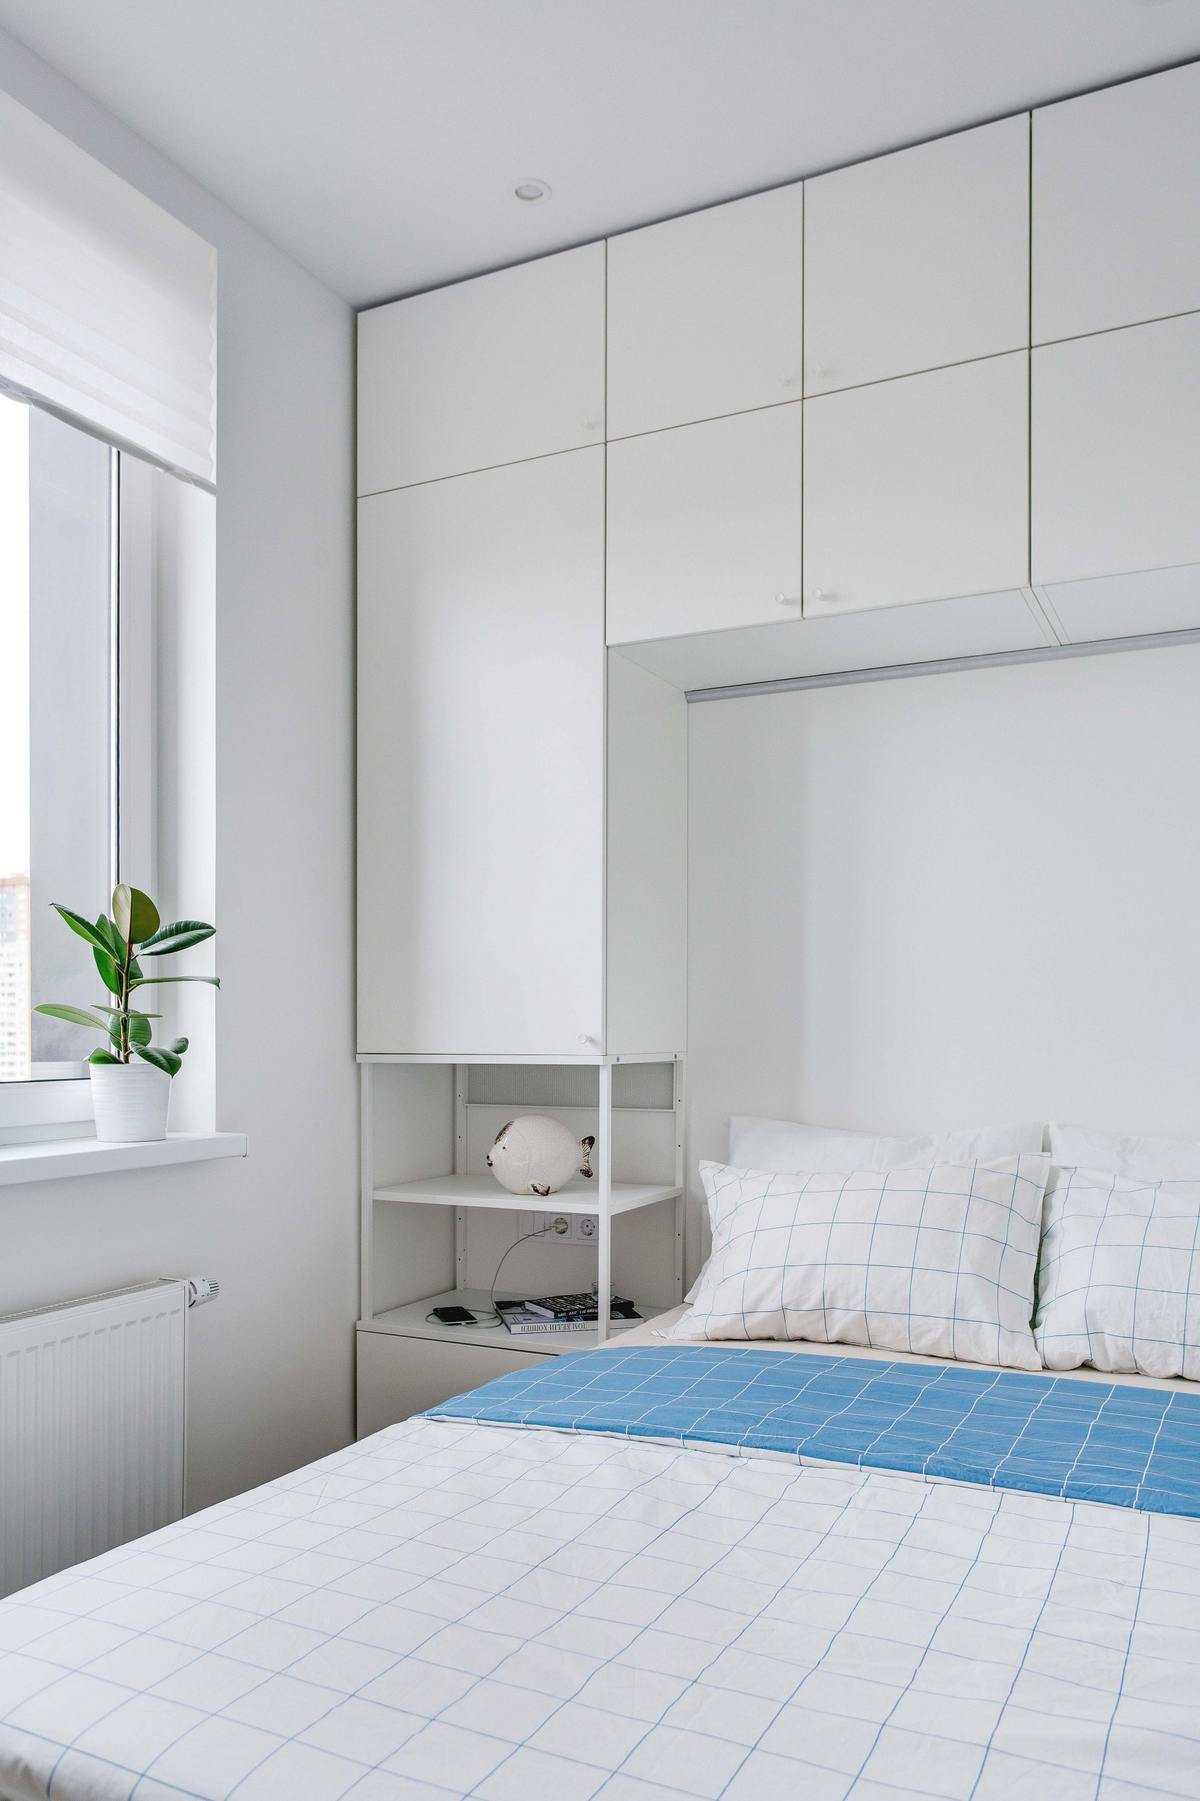 Và đây là phòng ngủ nhỏ xinh với gam màu trắng chủ đạo kết hợp một chút sắc xanh lam tươi tắn. Hệ thống tủ kệ cao kịch trần giúp tối ưu hóa không gian lưu trữ.